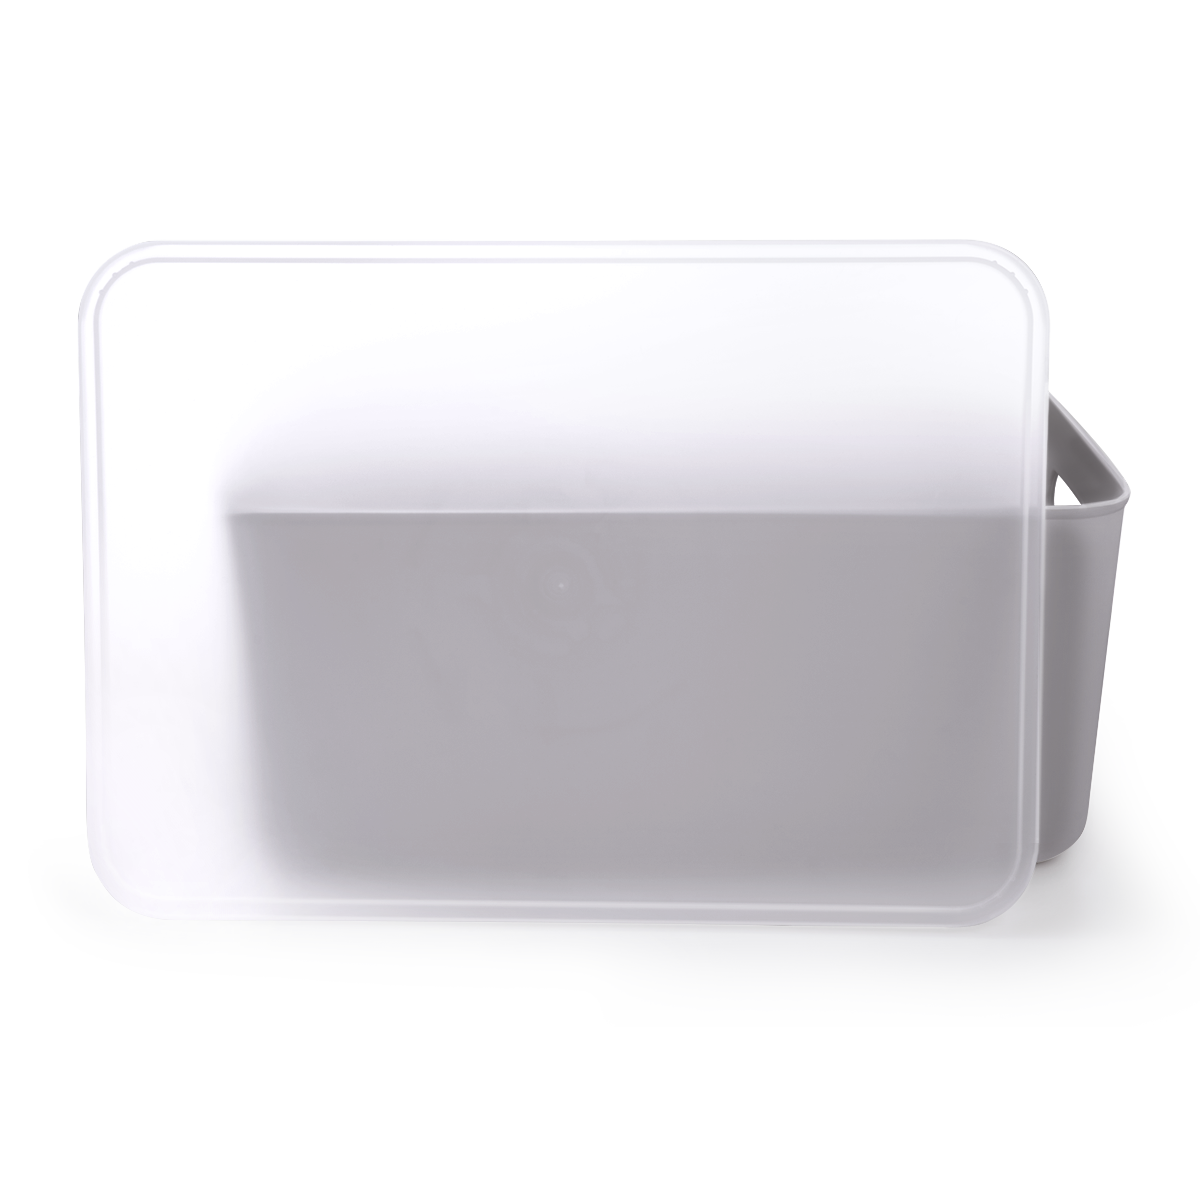 Ящик для хранения MVM пластиковый серый 160x257x360 FH-13 XL GRAY